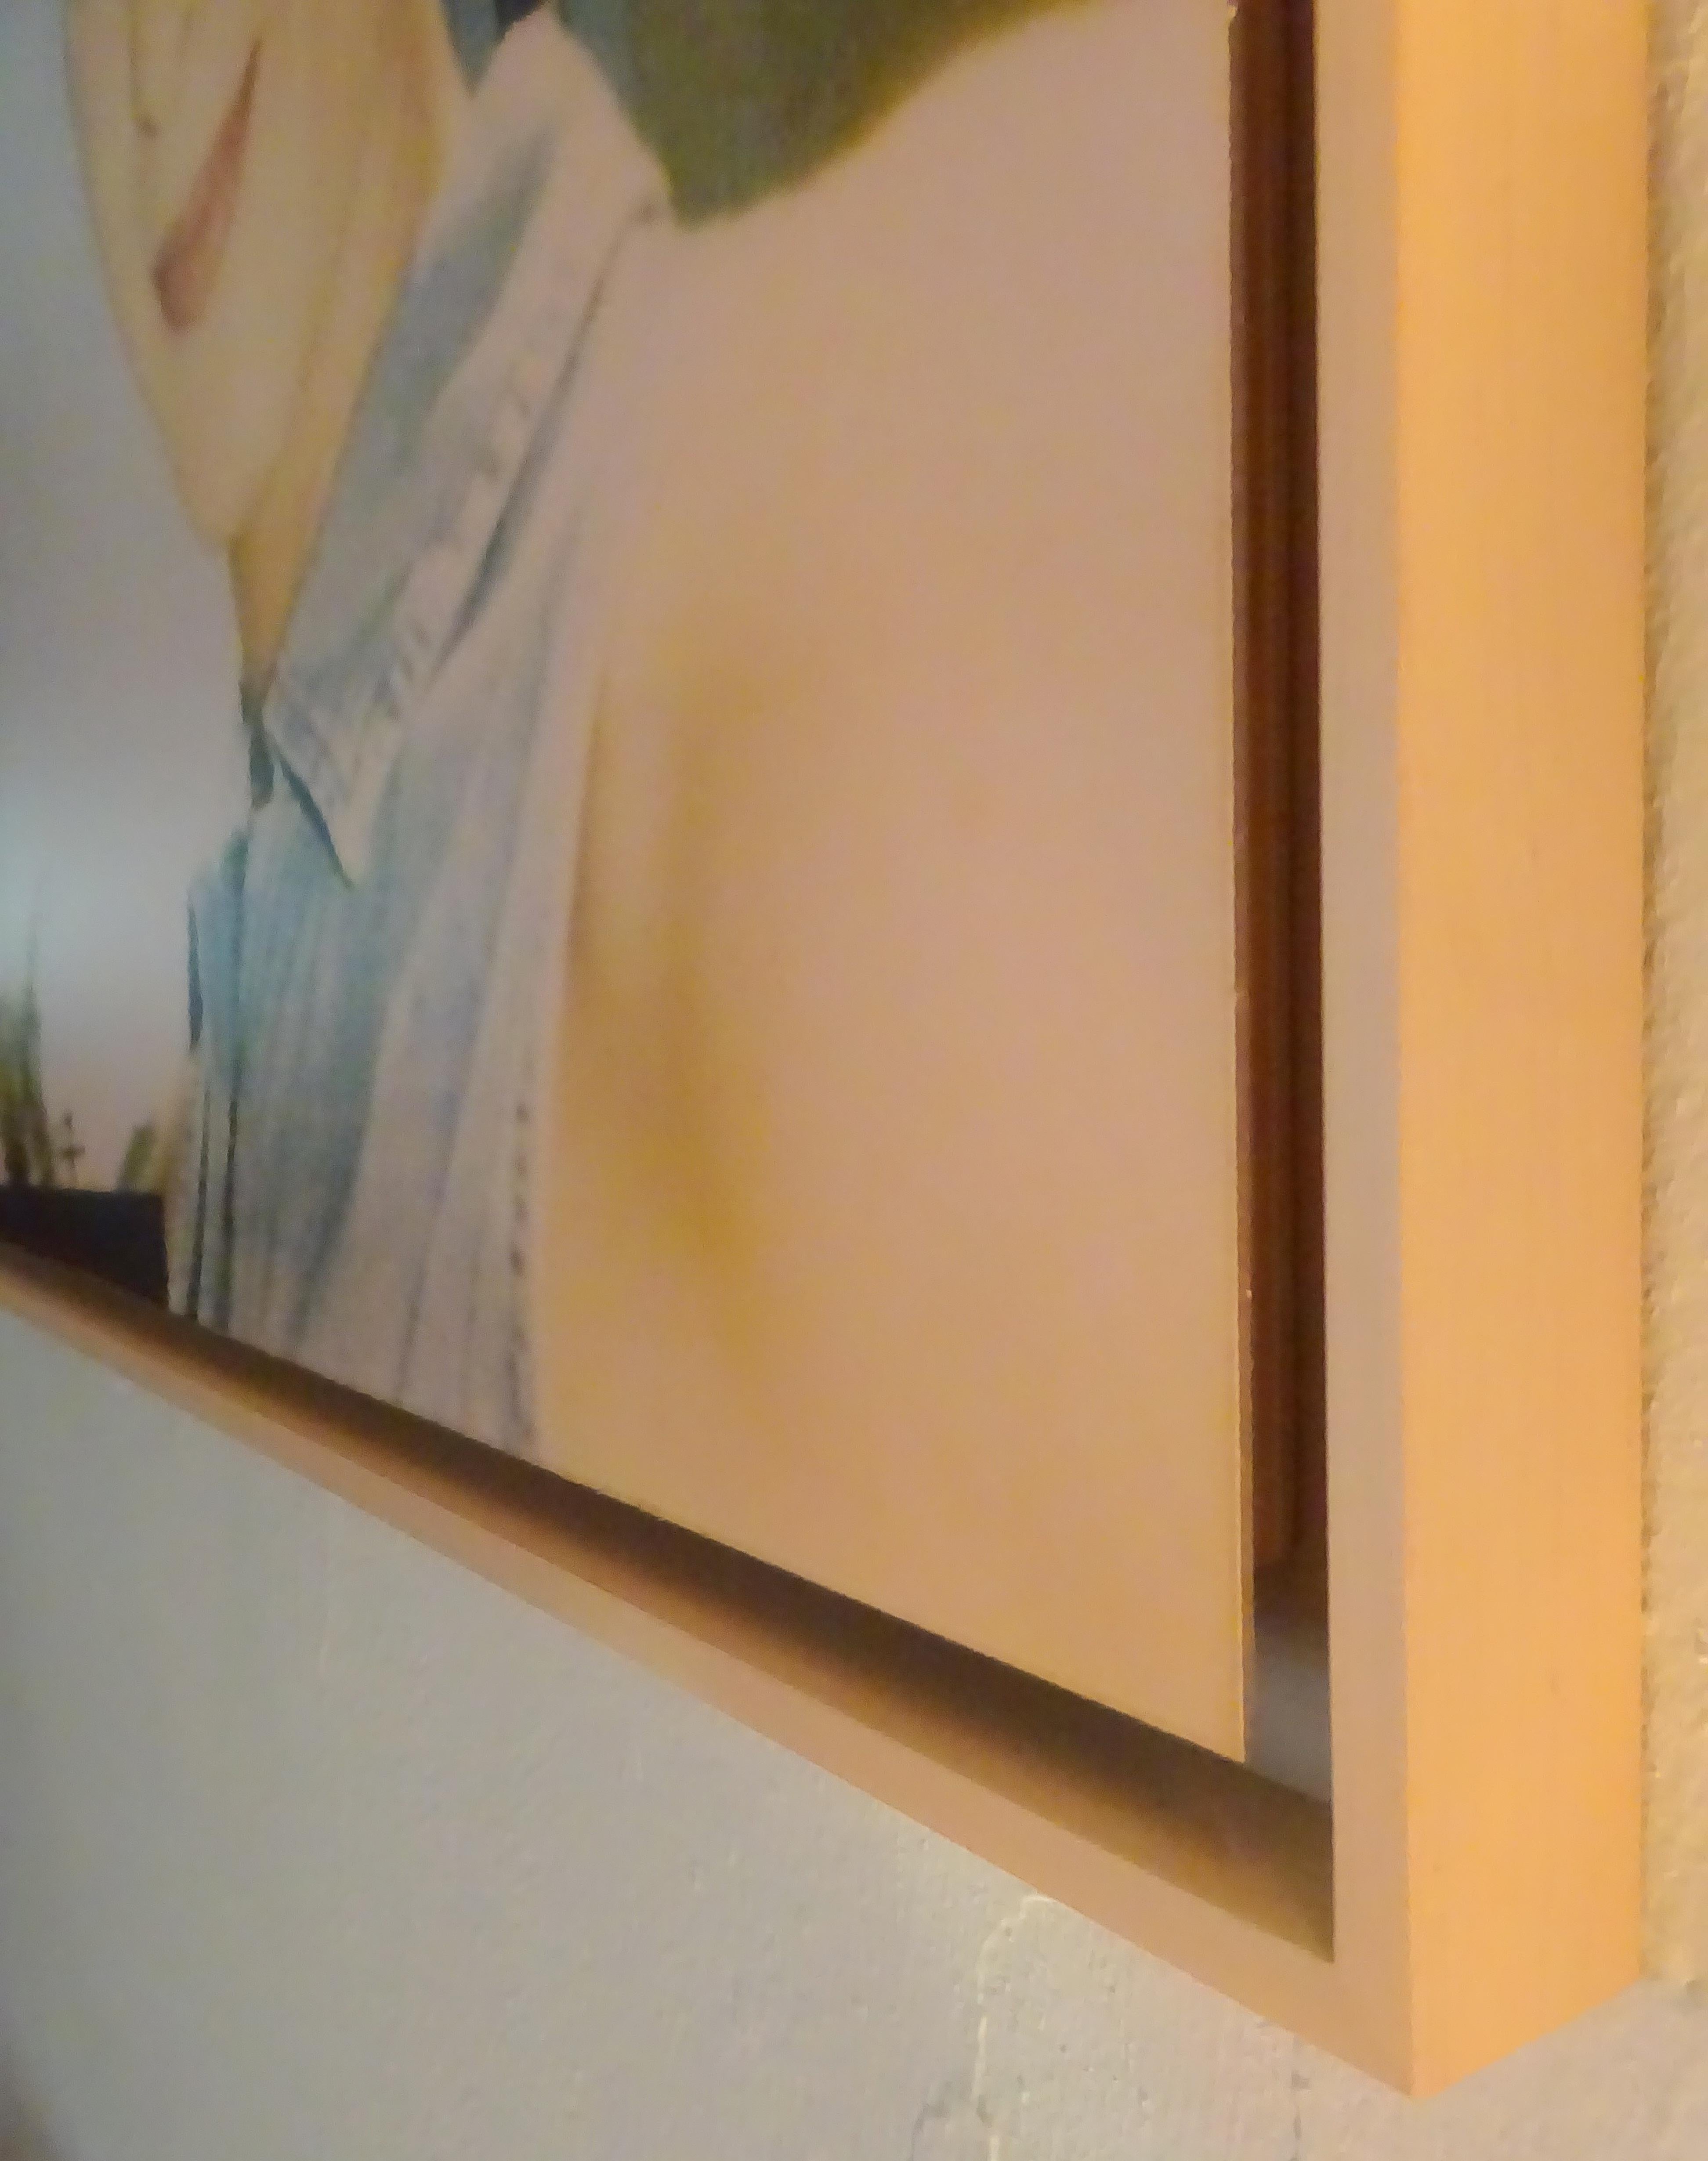 April Blue Eyes (Suburbia) - 2004, 

60x80cm, Edition de 2/5, 
c-print analogique, imprimé à la main par l'artiste, basé sur un Polaroid.  
Monté sur aluminium avec protection UV mate, avec cadre d'ombre en chêne.  
Signé au verso.  
Numéro